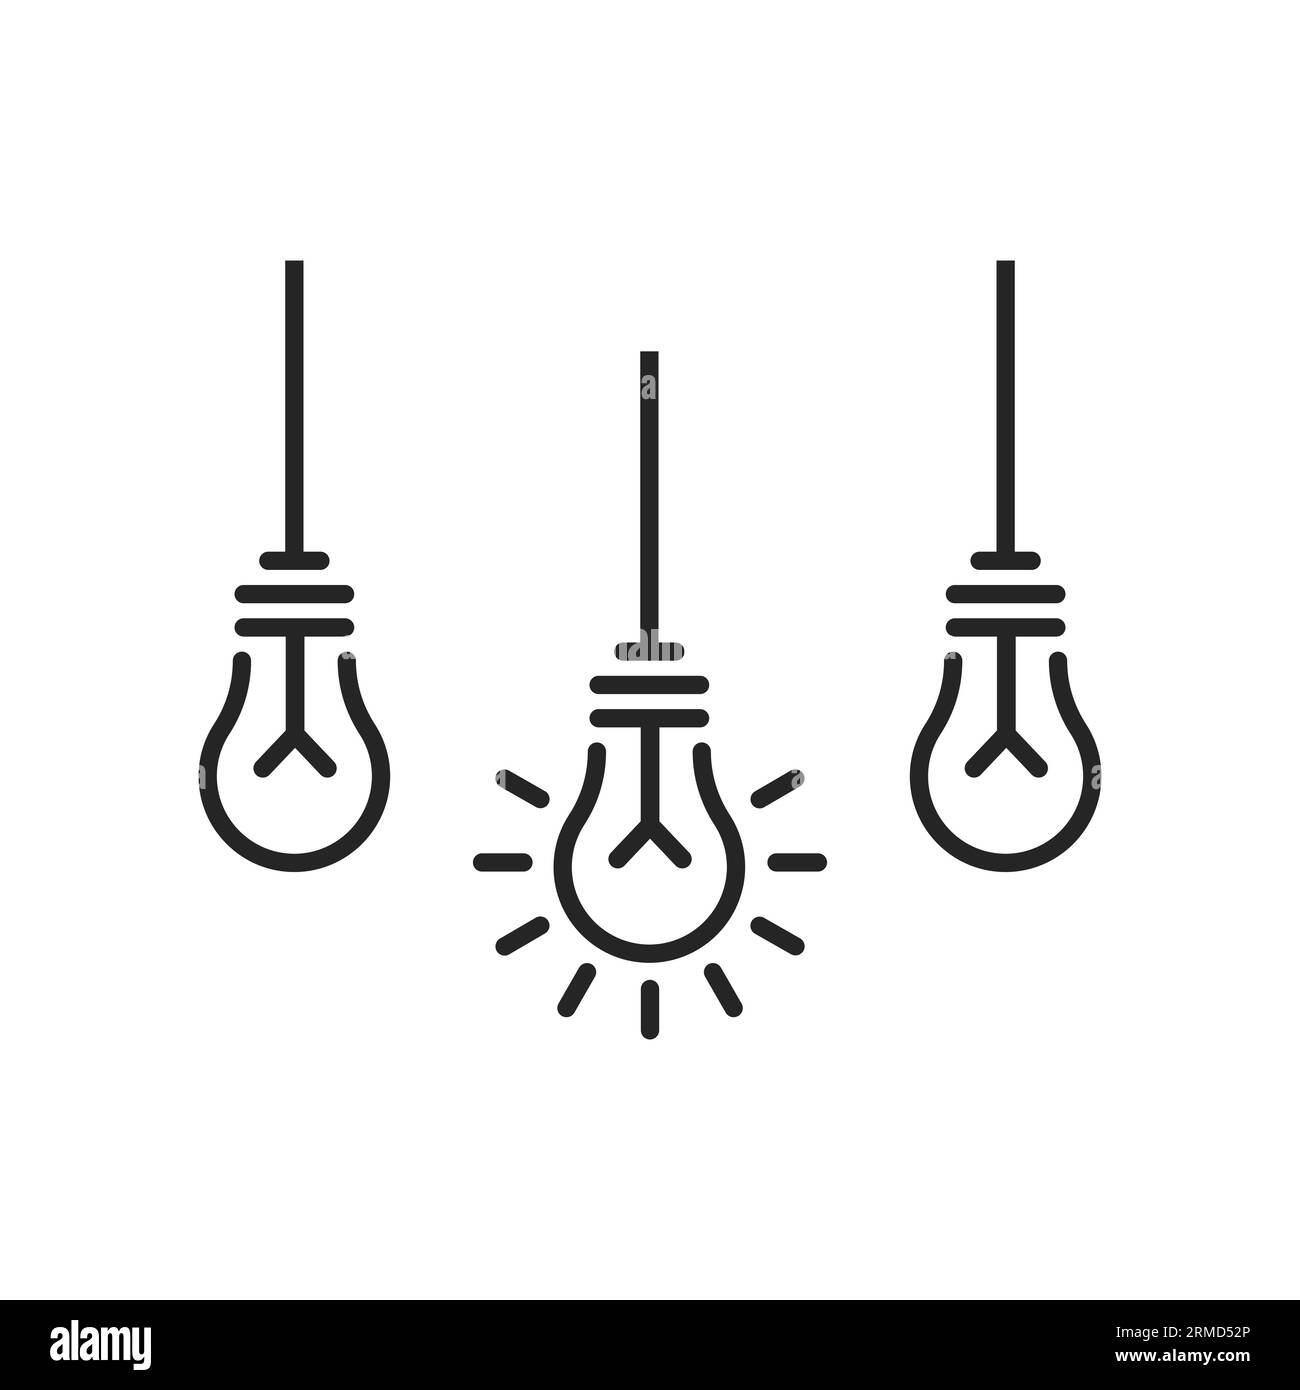 Drei dünne Glühlampen wie eine einfache Entscheidung. Flaches, minimales, lineares, einfaches Trend-Logo-Designelement isoliert auf weiß. Begriff der Abstraktion oder Vereinfachung Stock Vektor